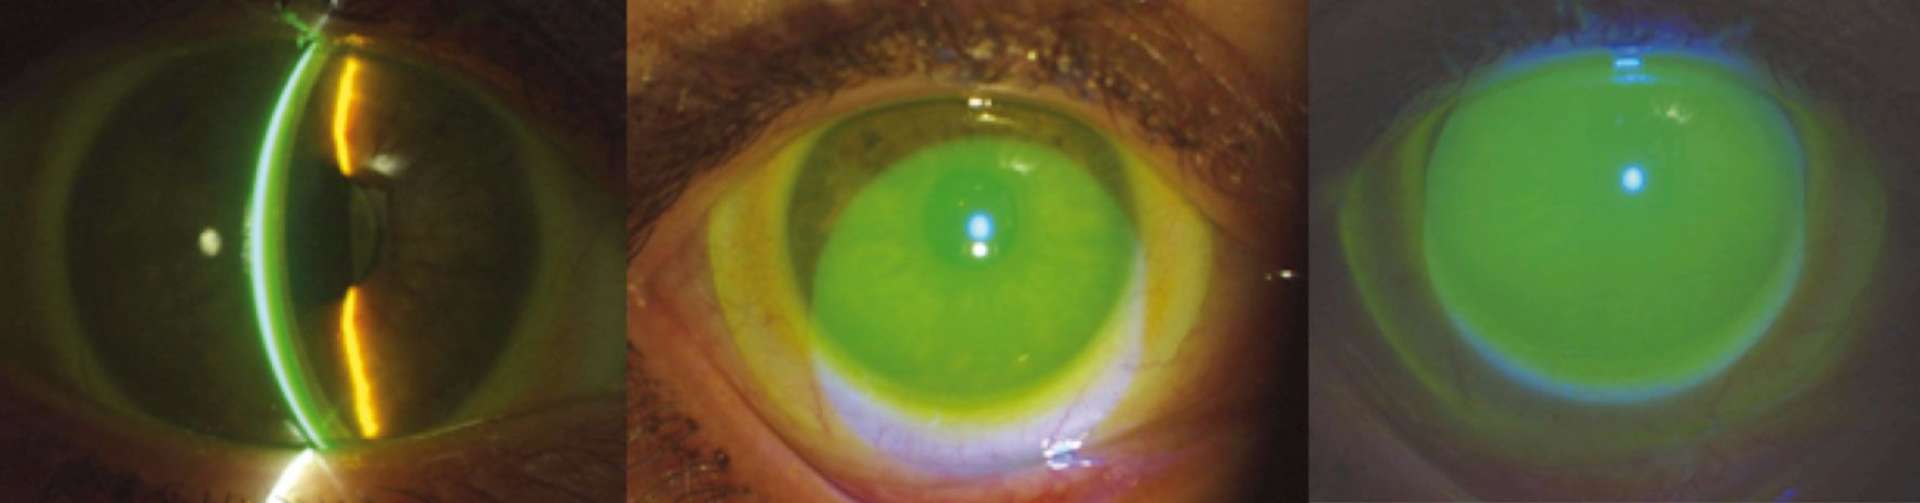 Figure 3. Observation d’une lentille sclérale avec ajout de fluo au sérum physiologique, lors de la pose.
